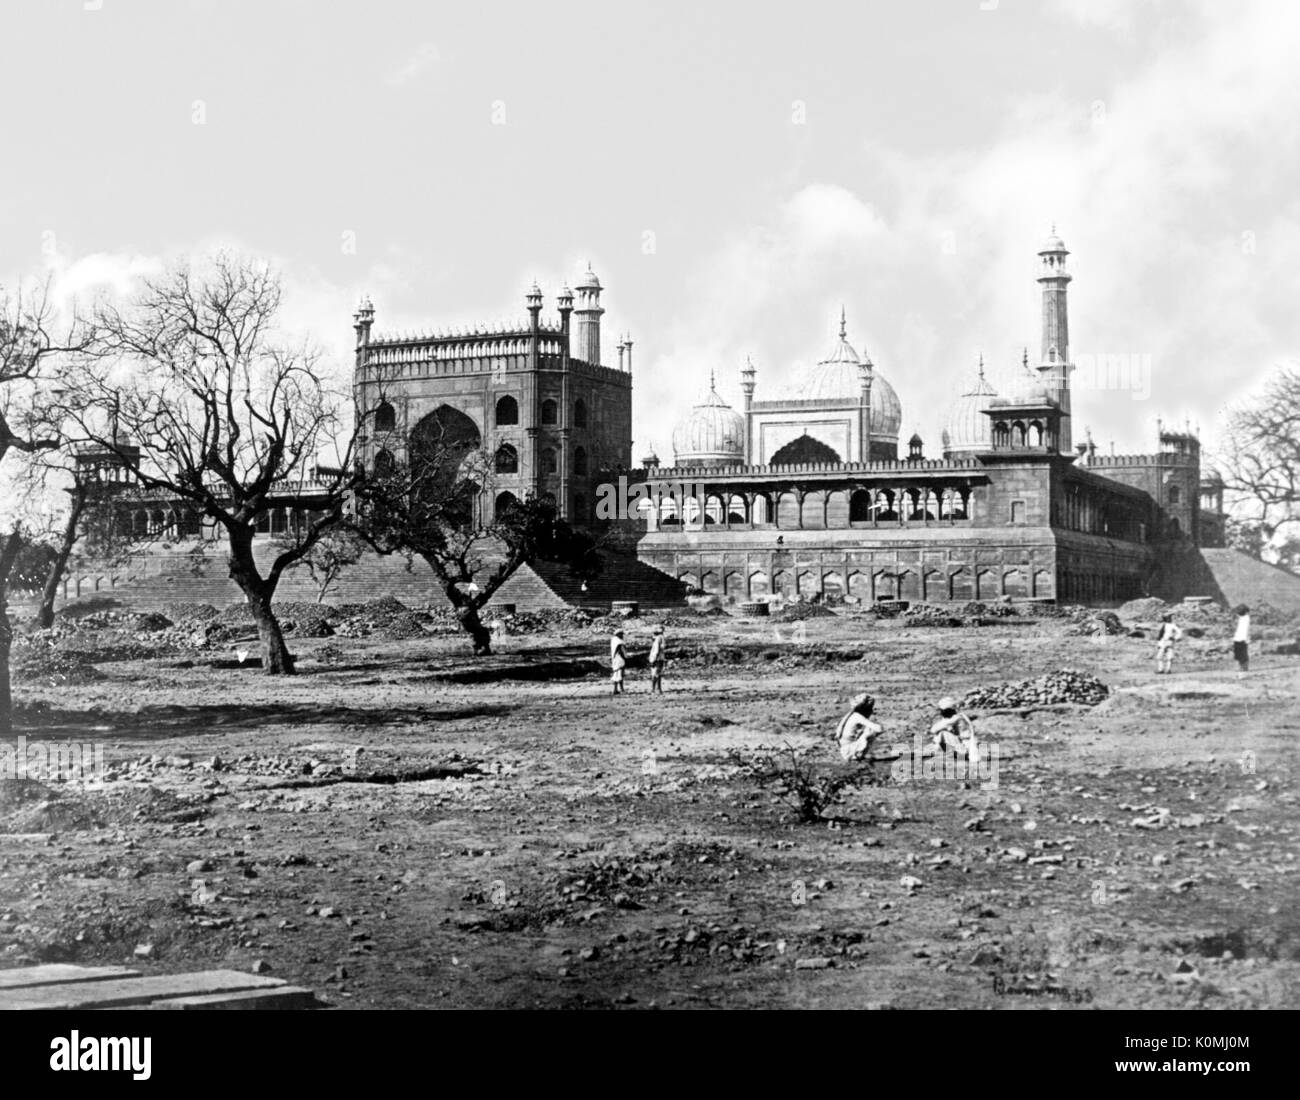 Alte vintage Laterne Folie von Jama Masjid, Delhi, Indien, Asien Stockfoto